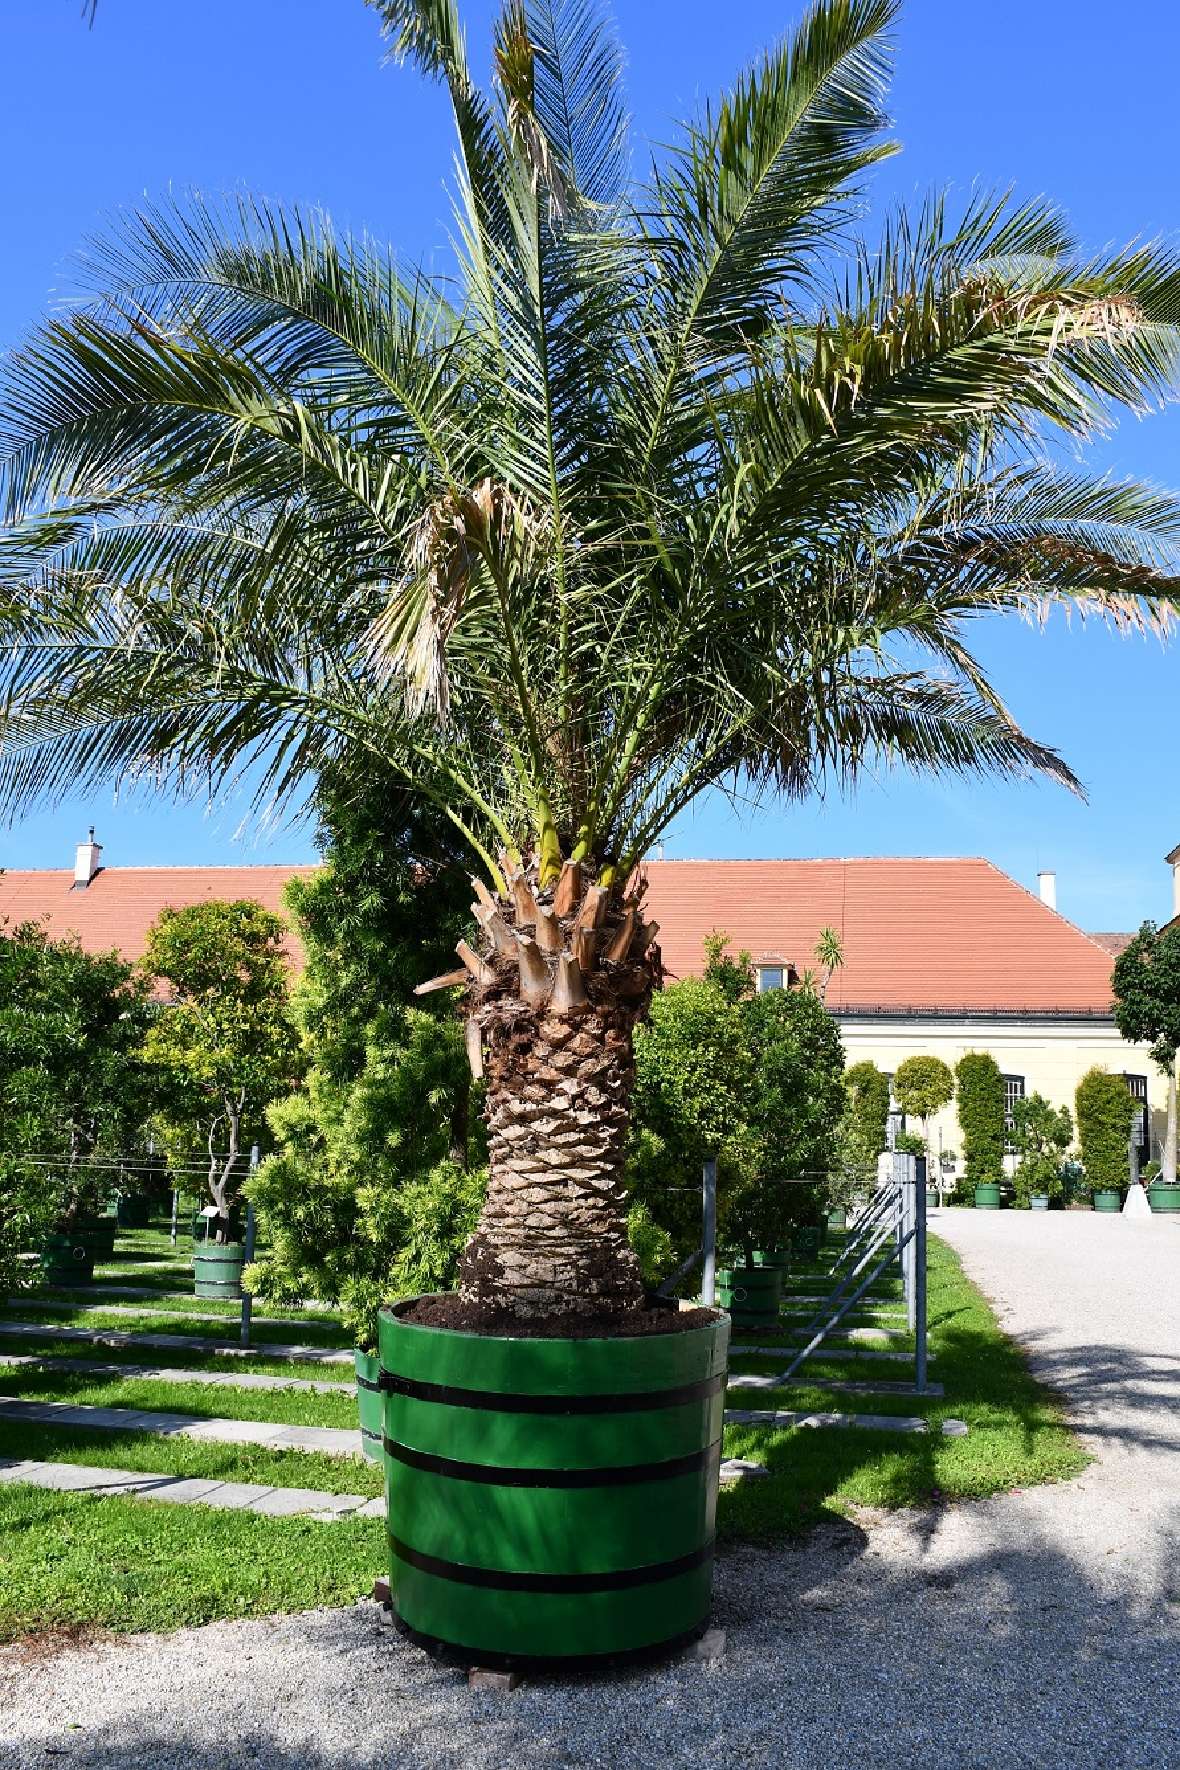 zu sehen ist eine große Palme mit grünen Palmwedeln in einem grünen Holzgefäß auf einem Kiesweg